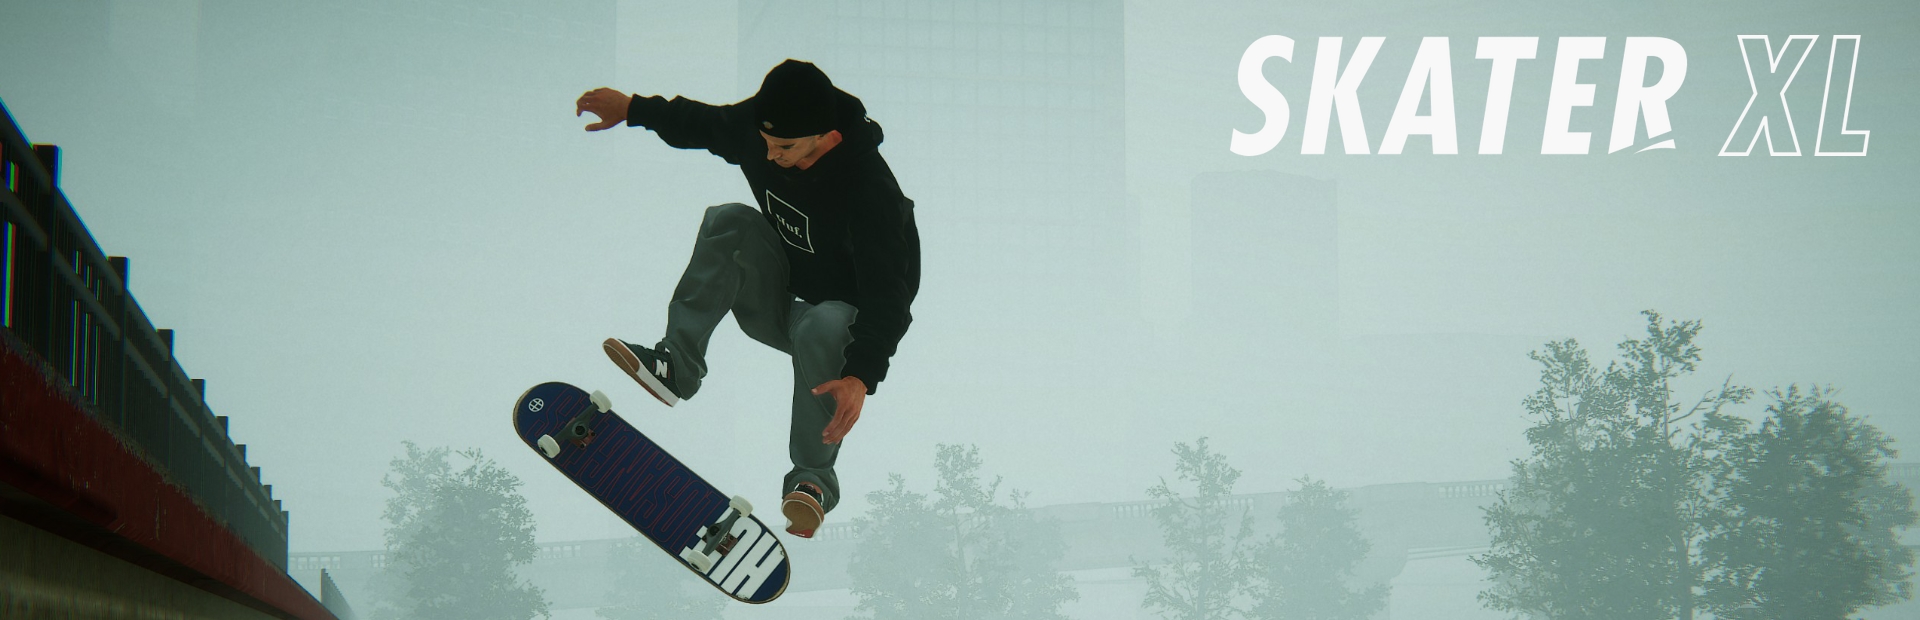 دانلود بازی Skater XL - The Ultimate Skateboarding Game برای PC | گیمباتو